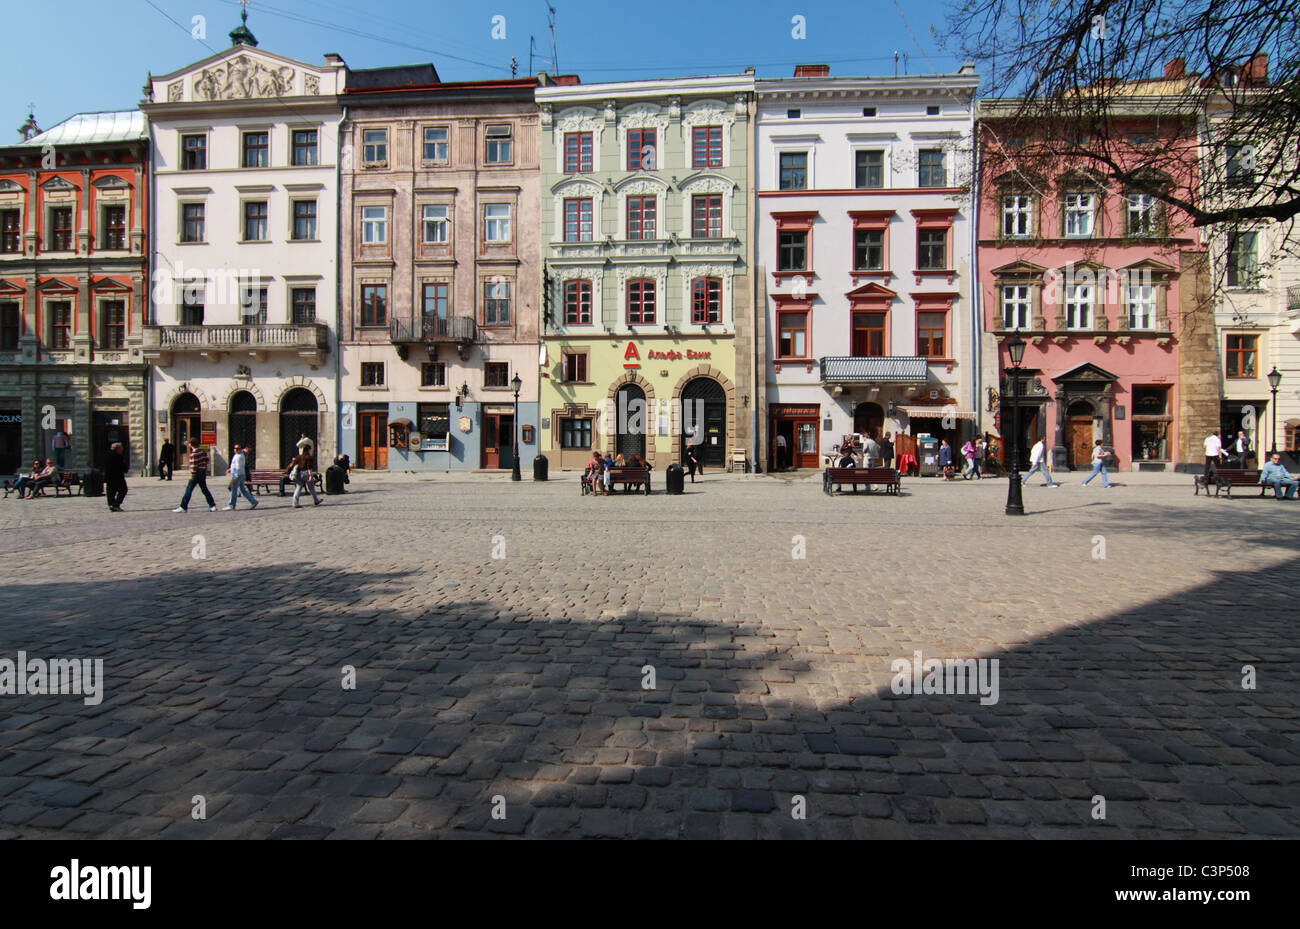 Rynok Square in Lviv on sunny day Stock Photo